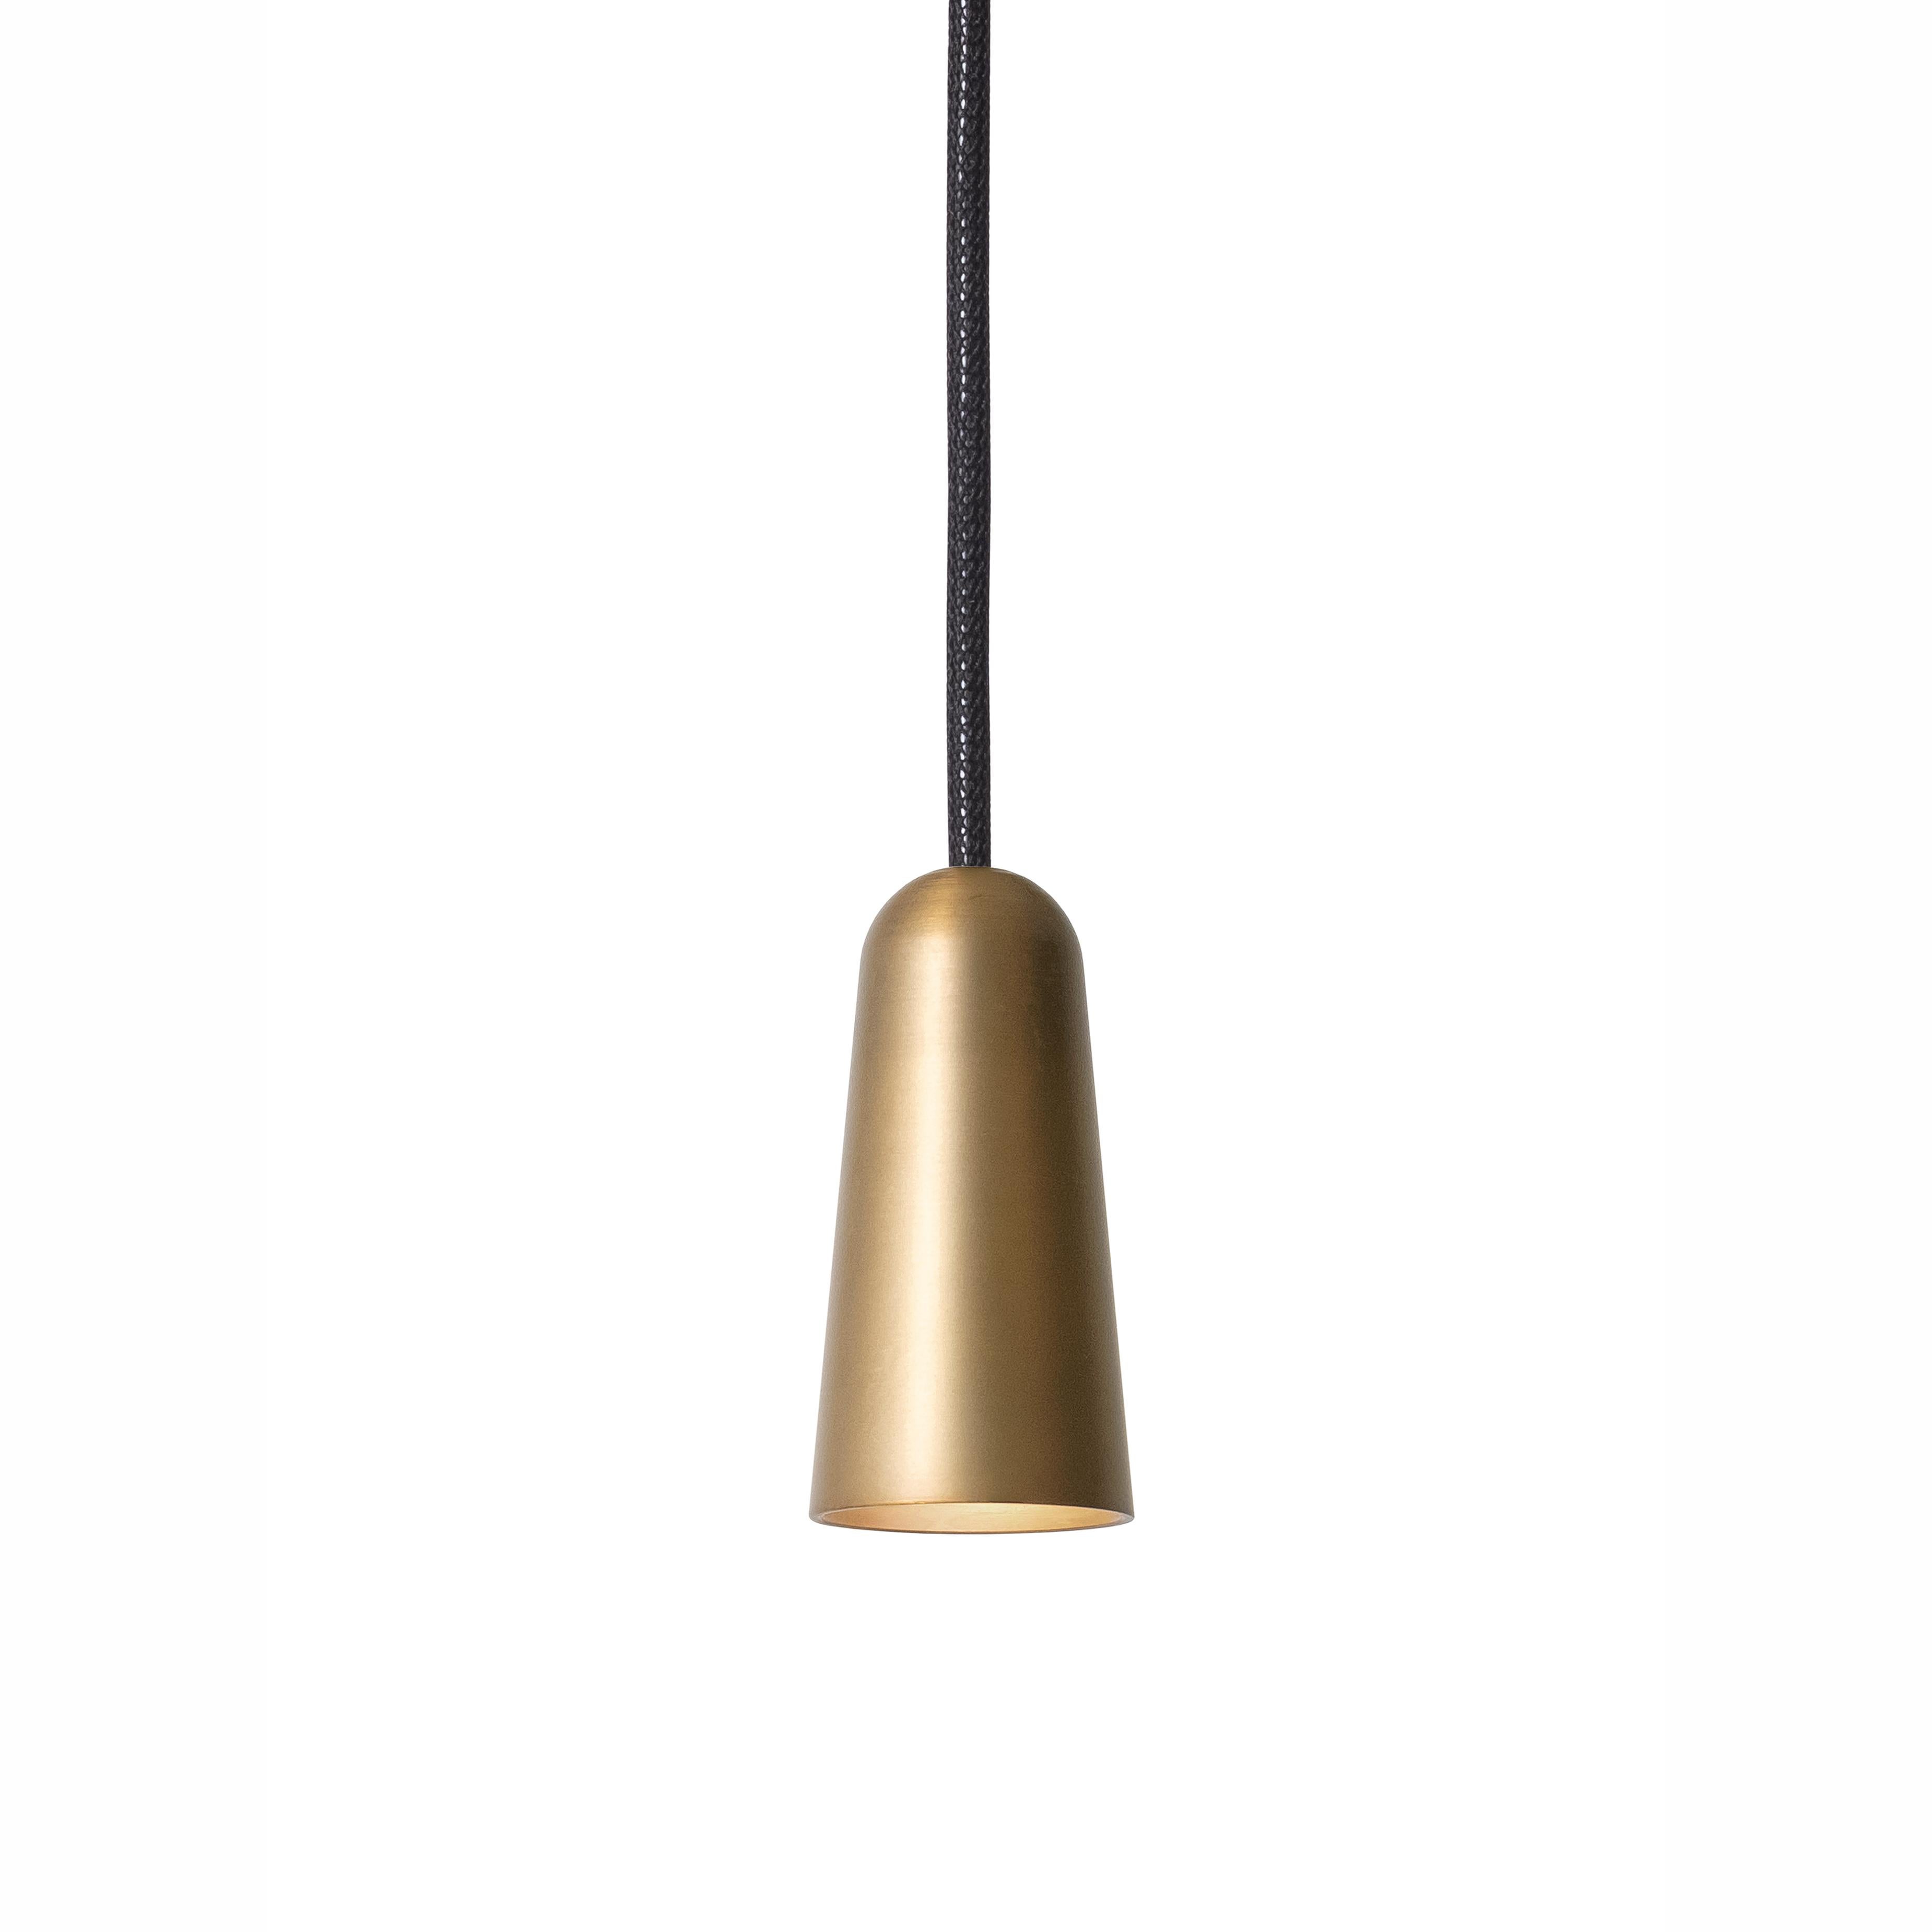 Scandinavian Modern Henrik Tengler 3493-6 Massiv Lamp by Konsthantverk For Sale